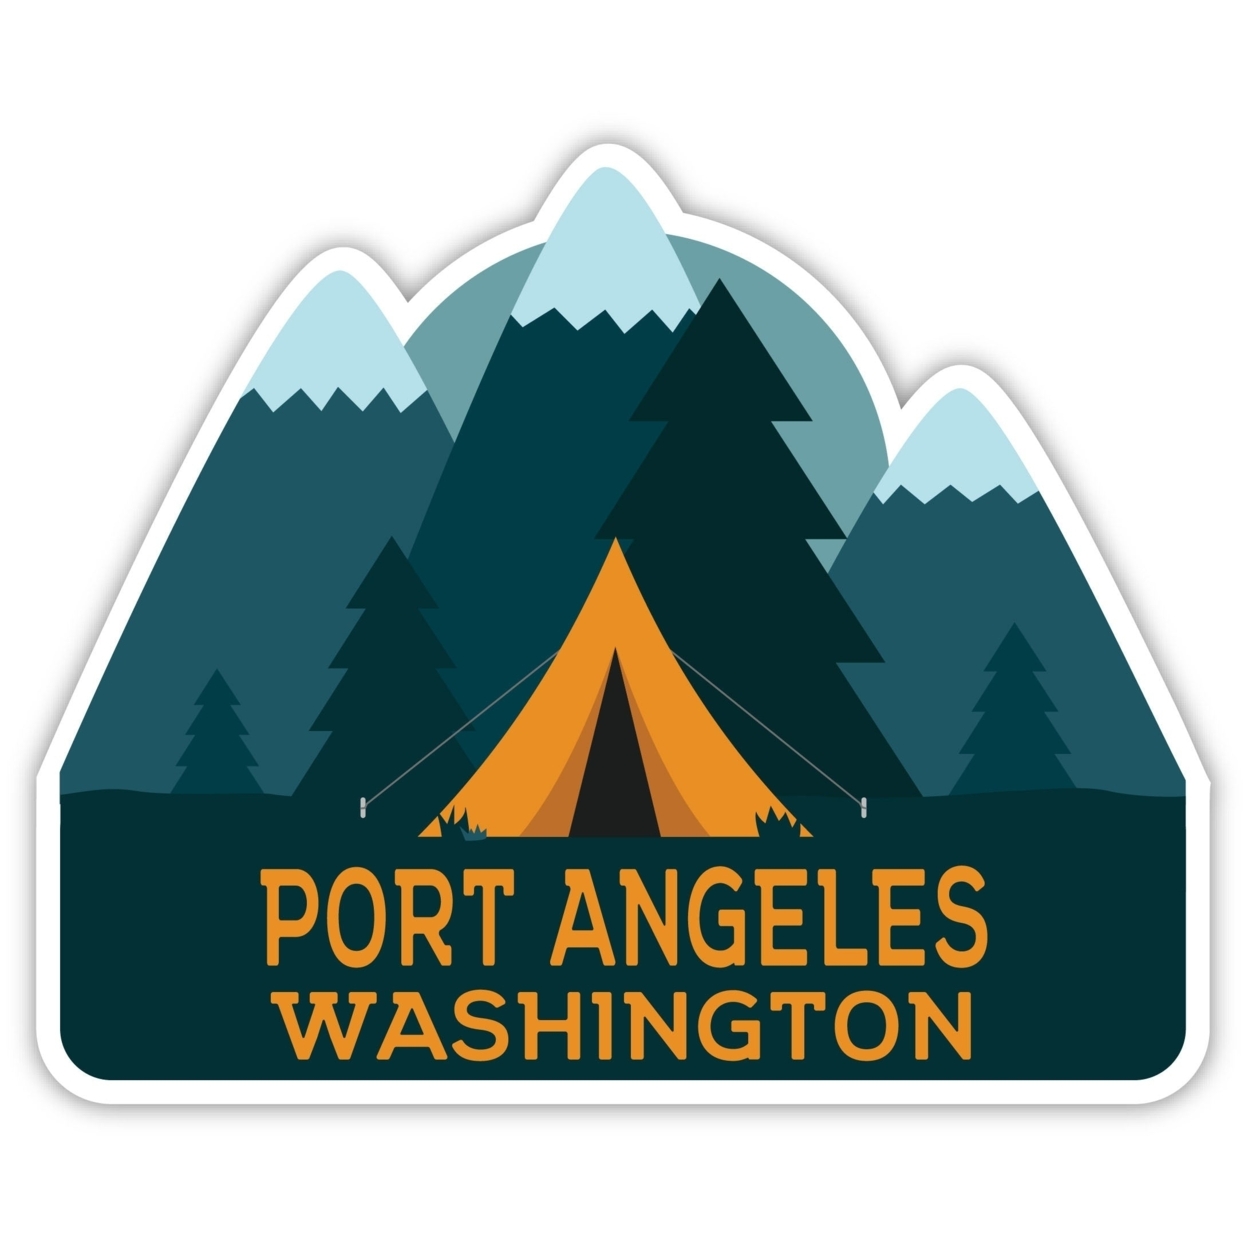 Port Angeles Washington Souvenir Decorative Stickers (Choose Theme And Size) - Single Unit, 4-Inch, Tent